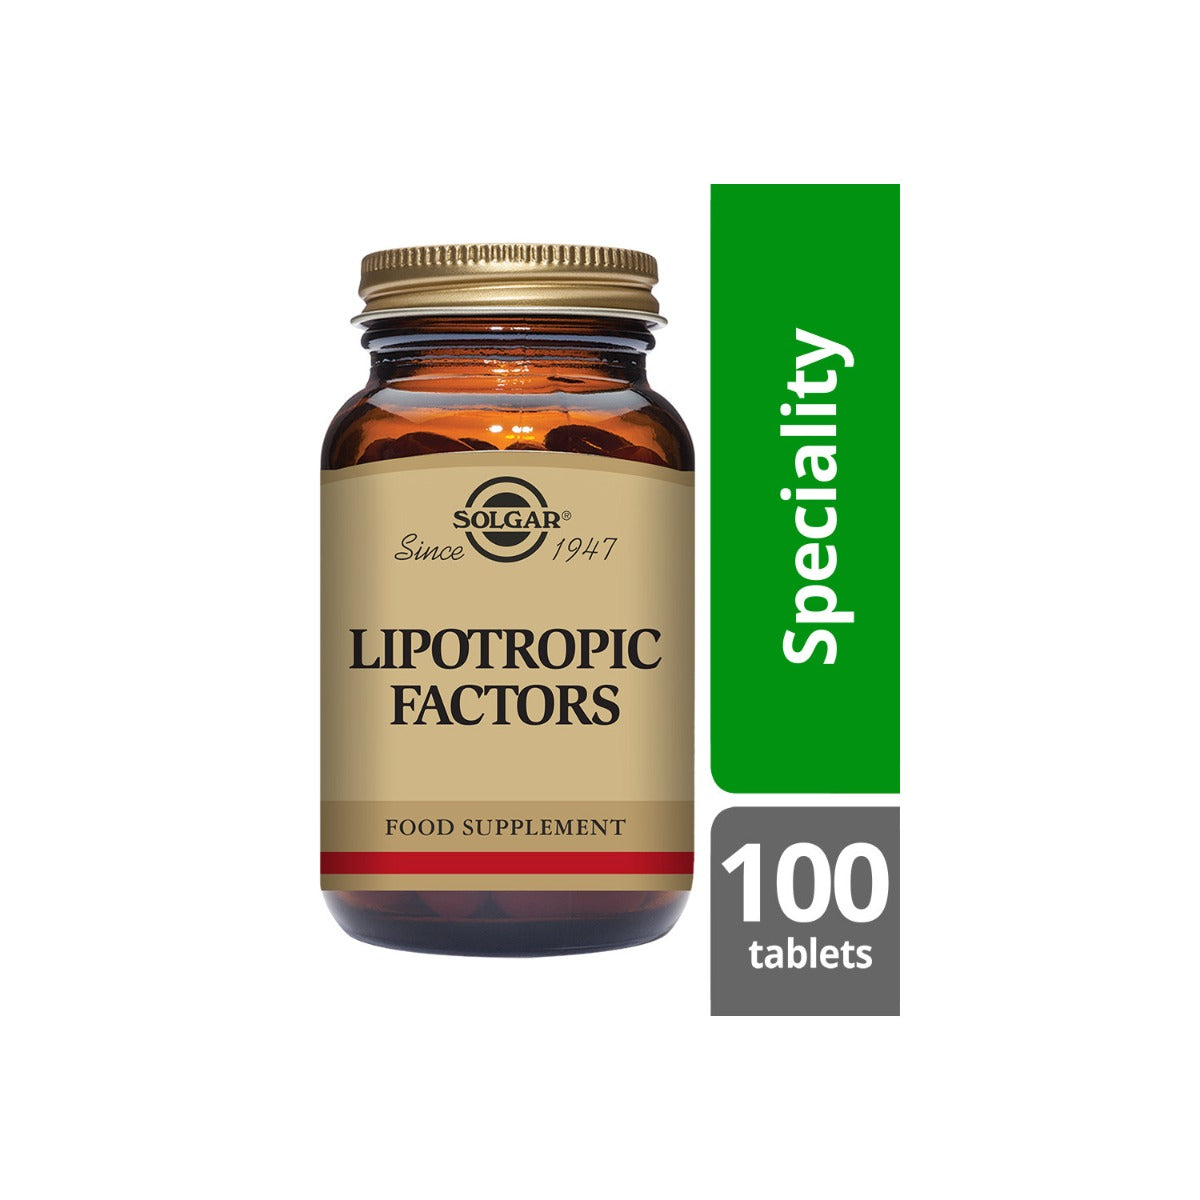 Solgar® Lipotropic Factors Tablets - Pack of 100